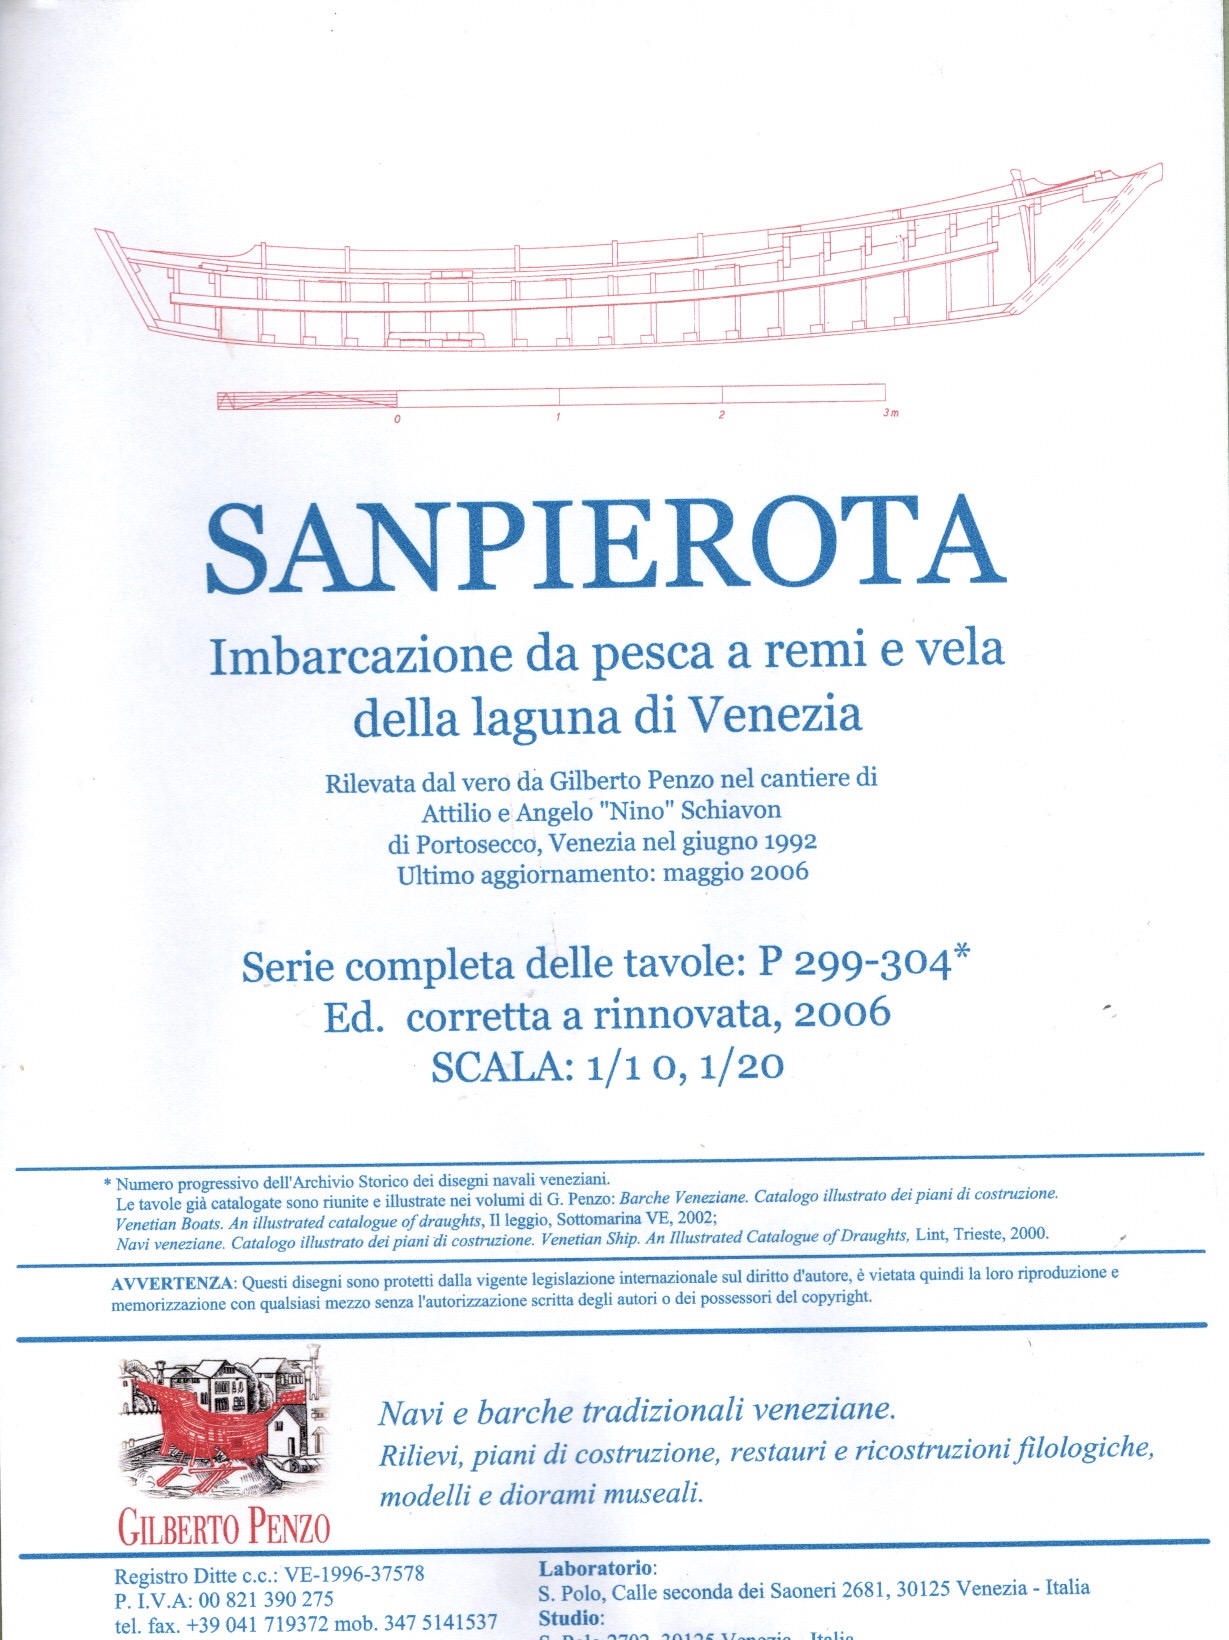 Sanpierota - Piani modellismo- 1:10, 1:20